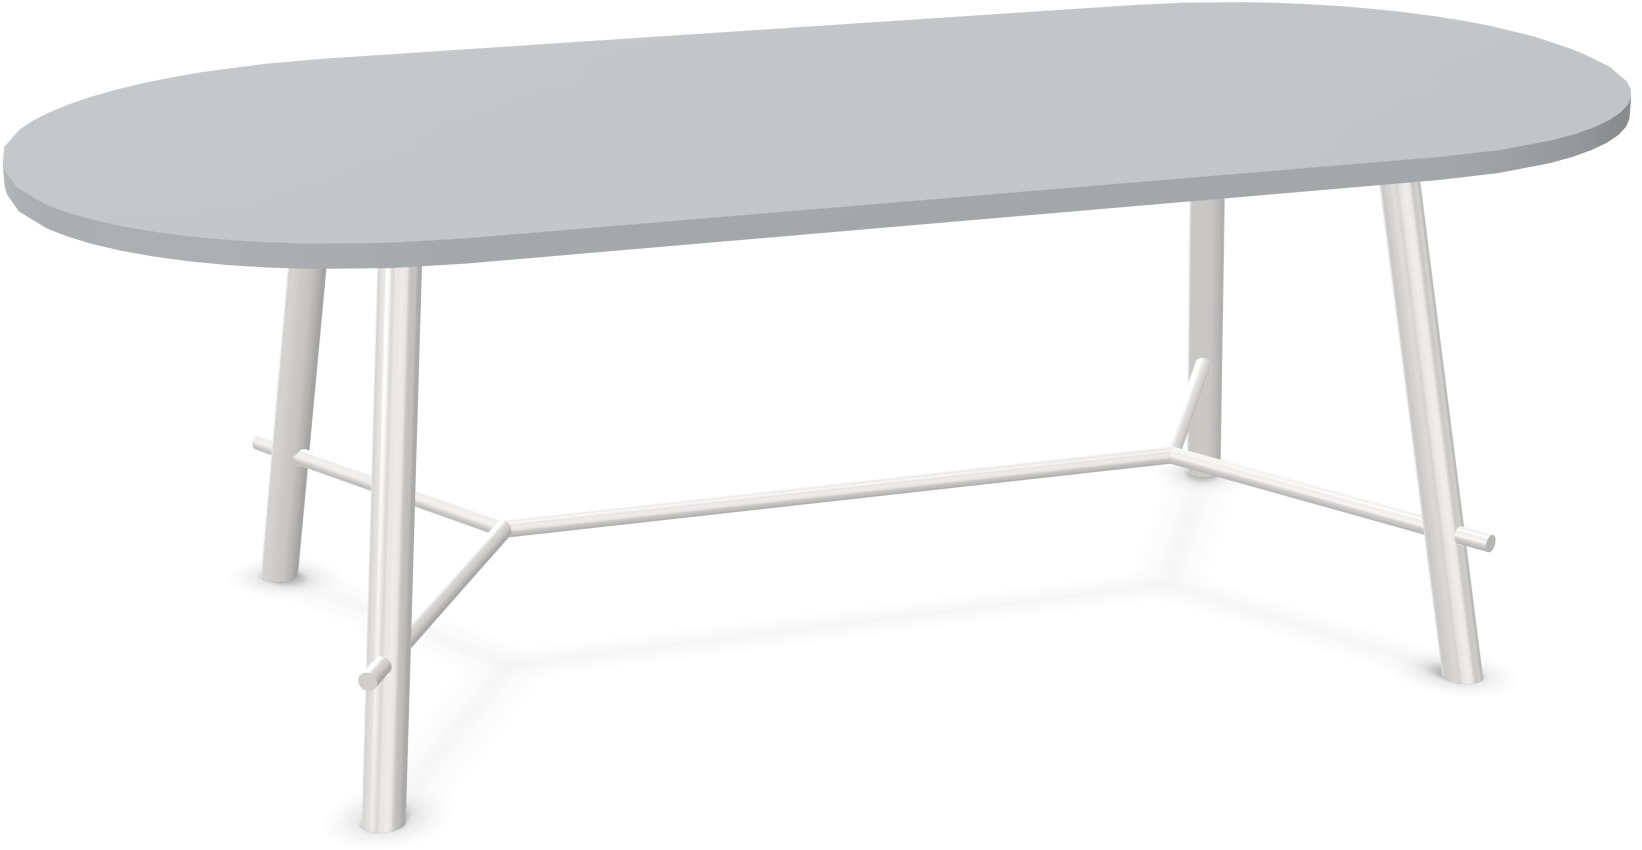 Record Living Tisch in Hellgrau / Weiss präsentiert im Onlineshop von KAQTU Design AG. Esstisch ist von Infiniti Design